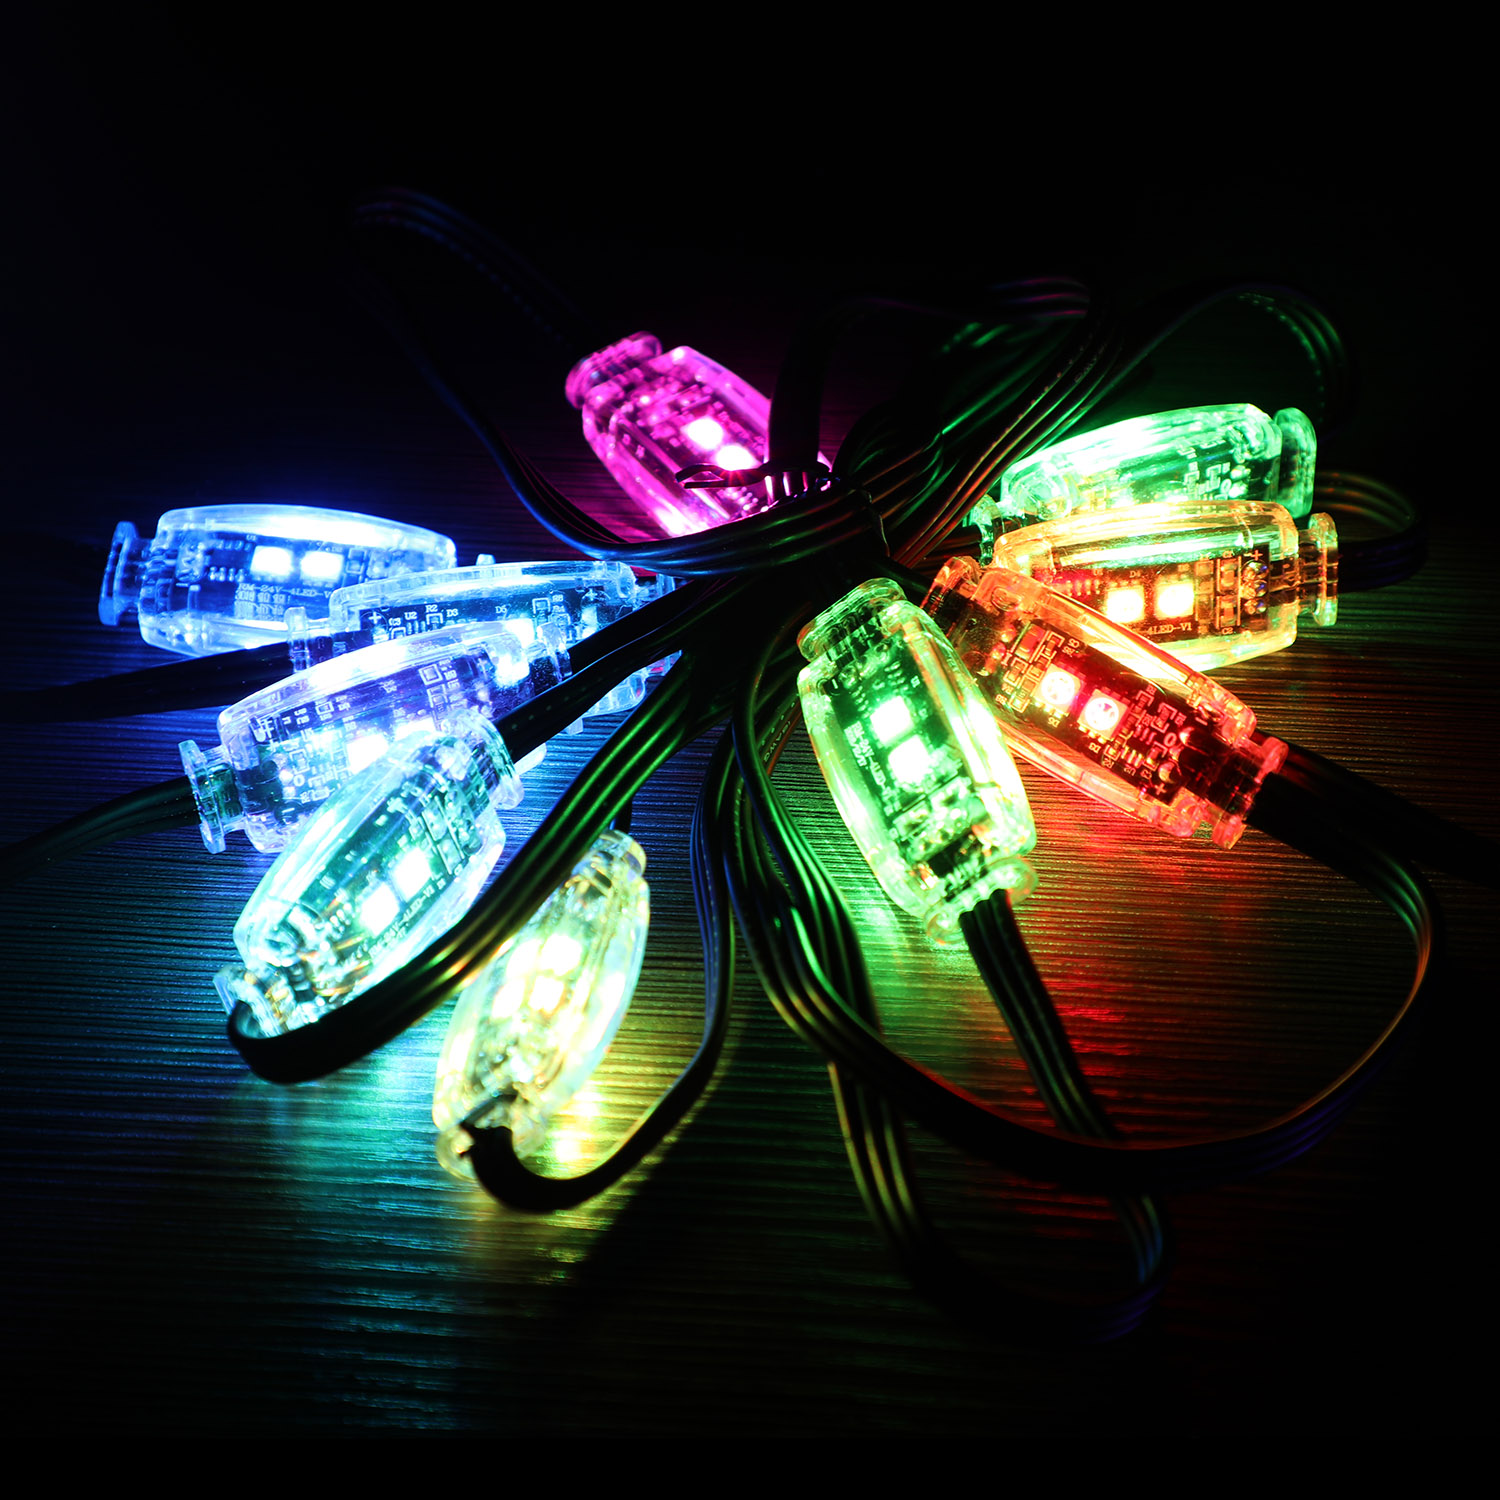 24V LED Decorative LED String Lights